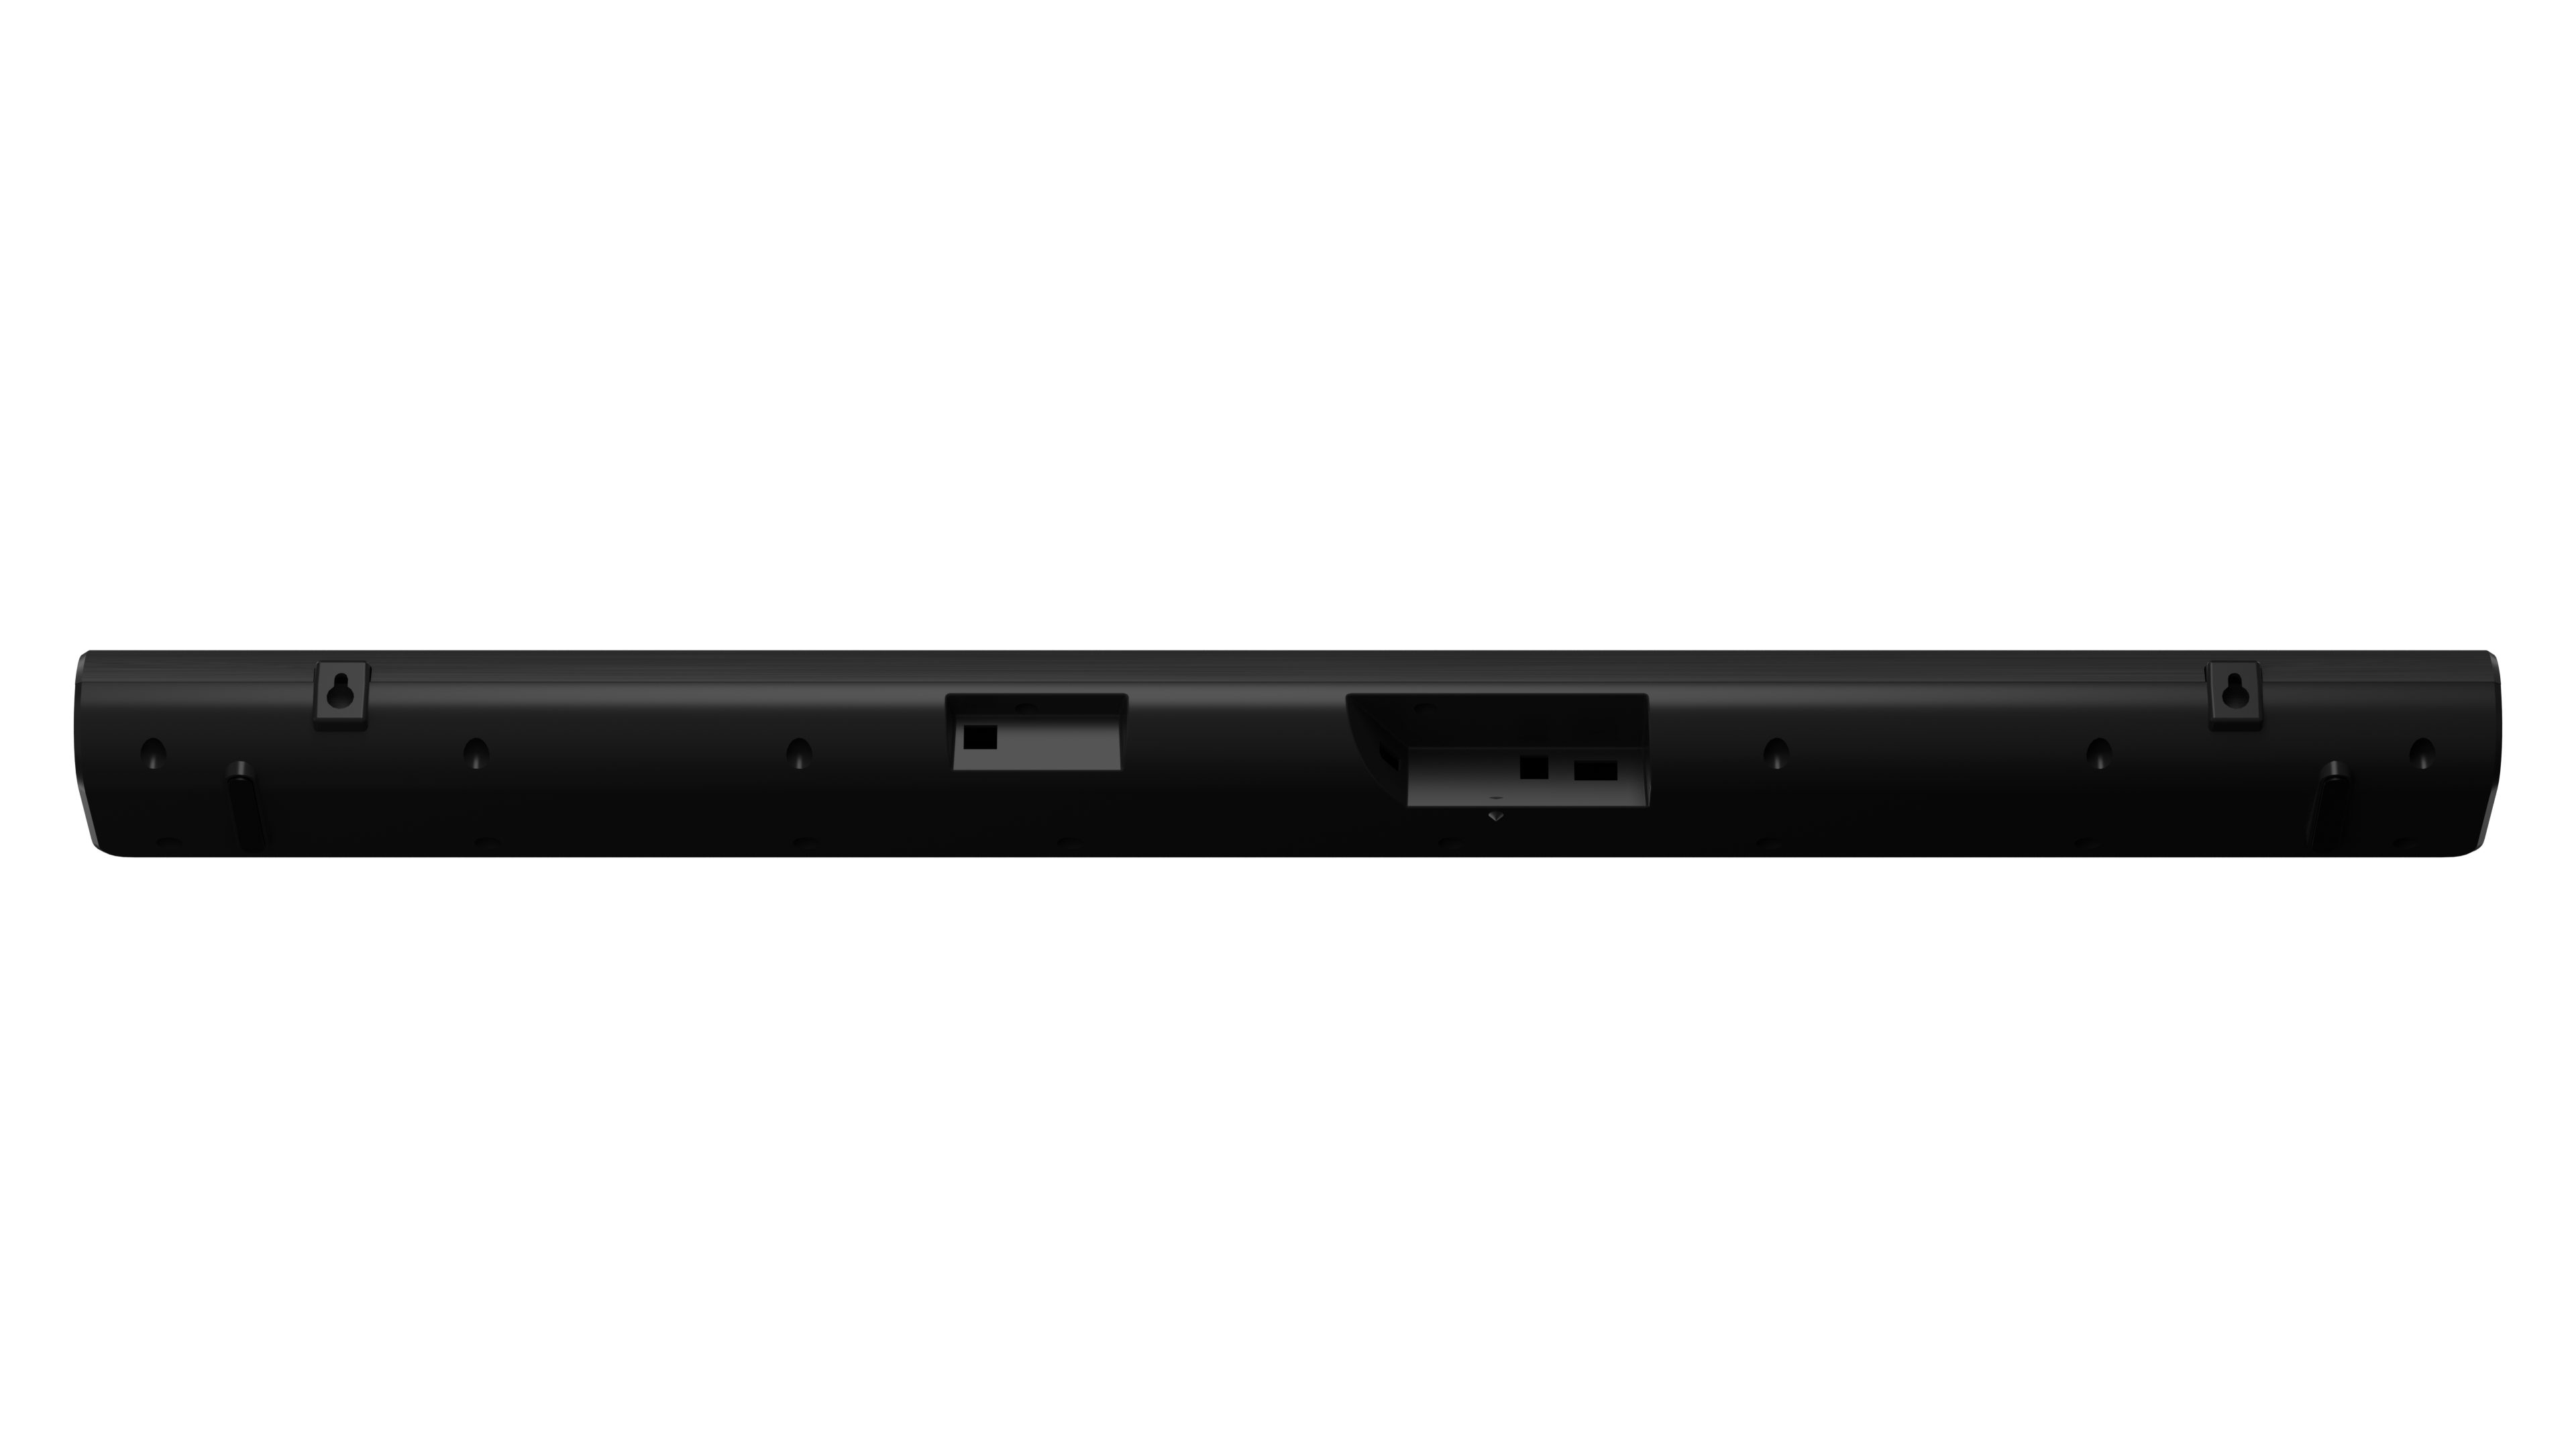 Hisense HS205G 2.0 Kanal Soundbar, 2.0 (Bluetooth, W) schwarz Watt, 120 120 Soundbar